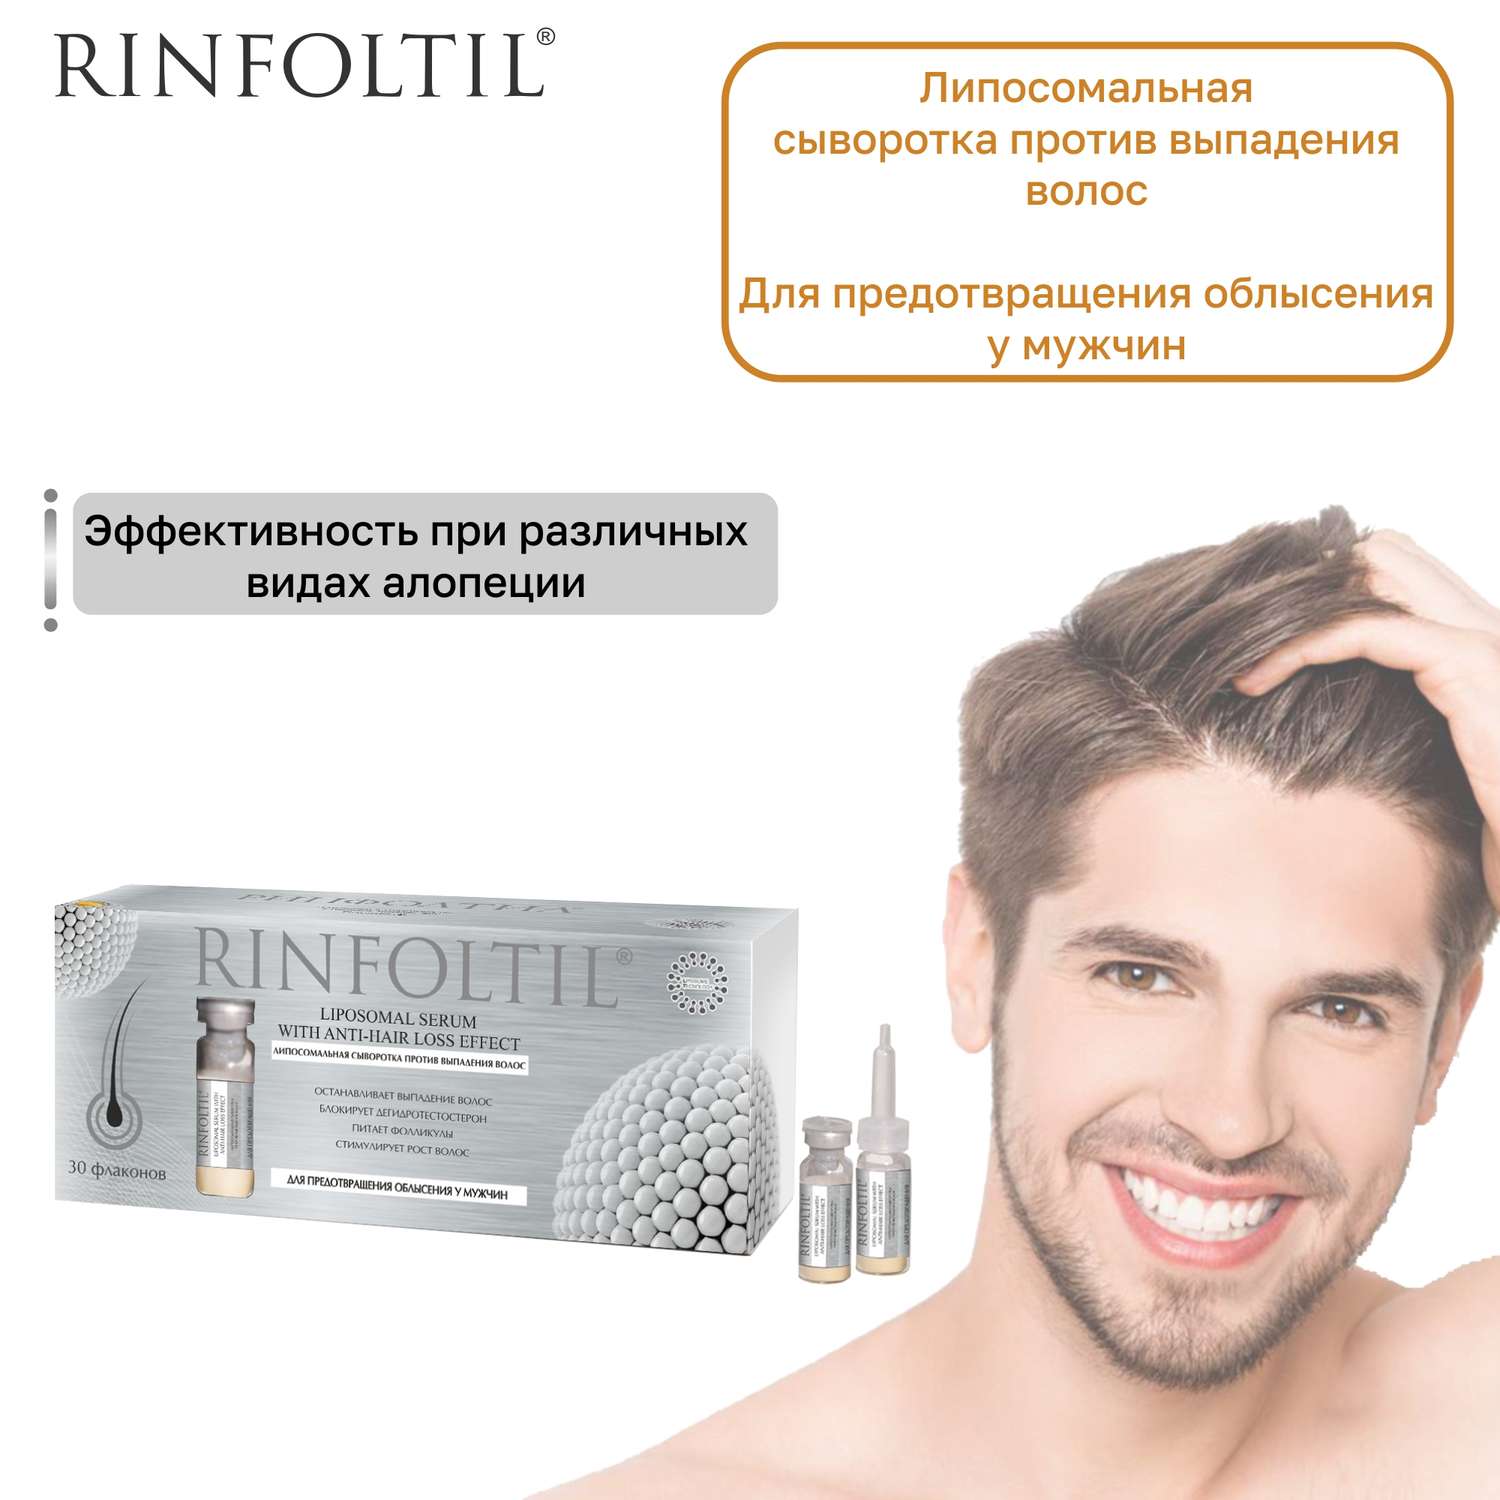 Сыворотка Rinfoltil Липосомальная против выпадения волос. Для предотвращения облысения у мужчин - фото 3